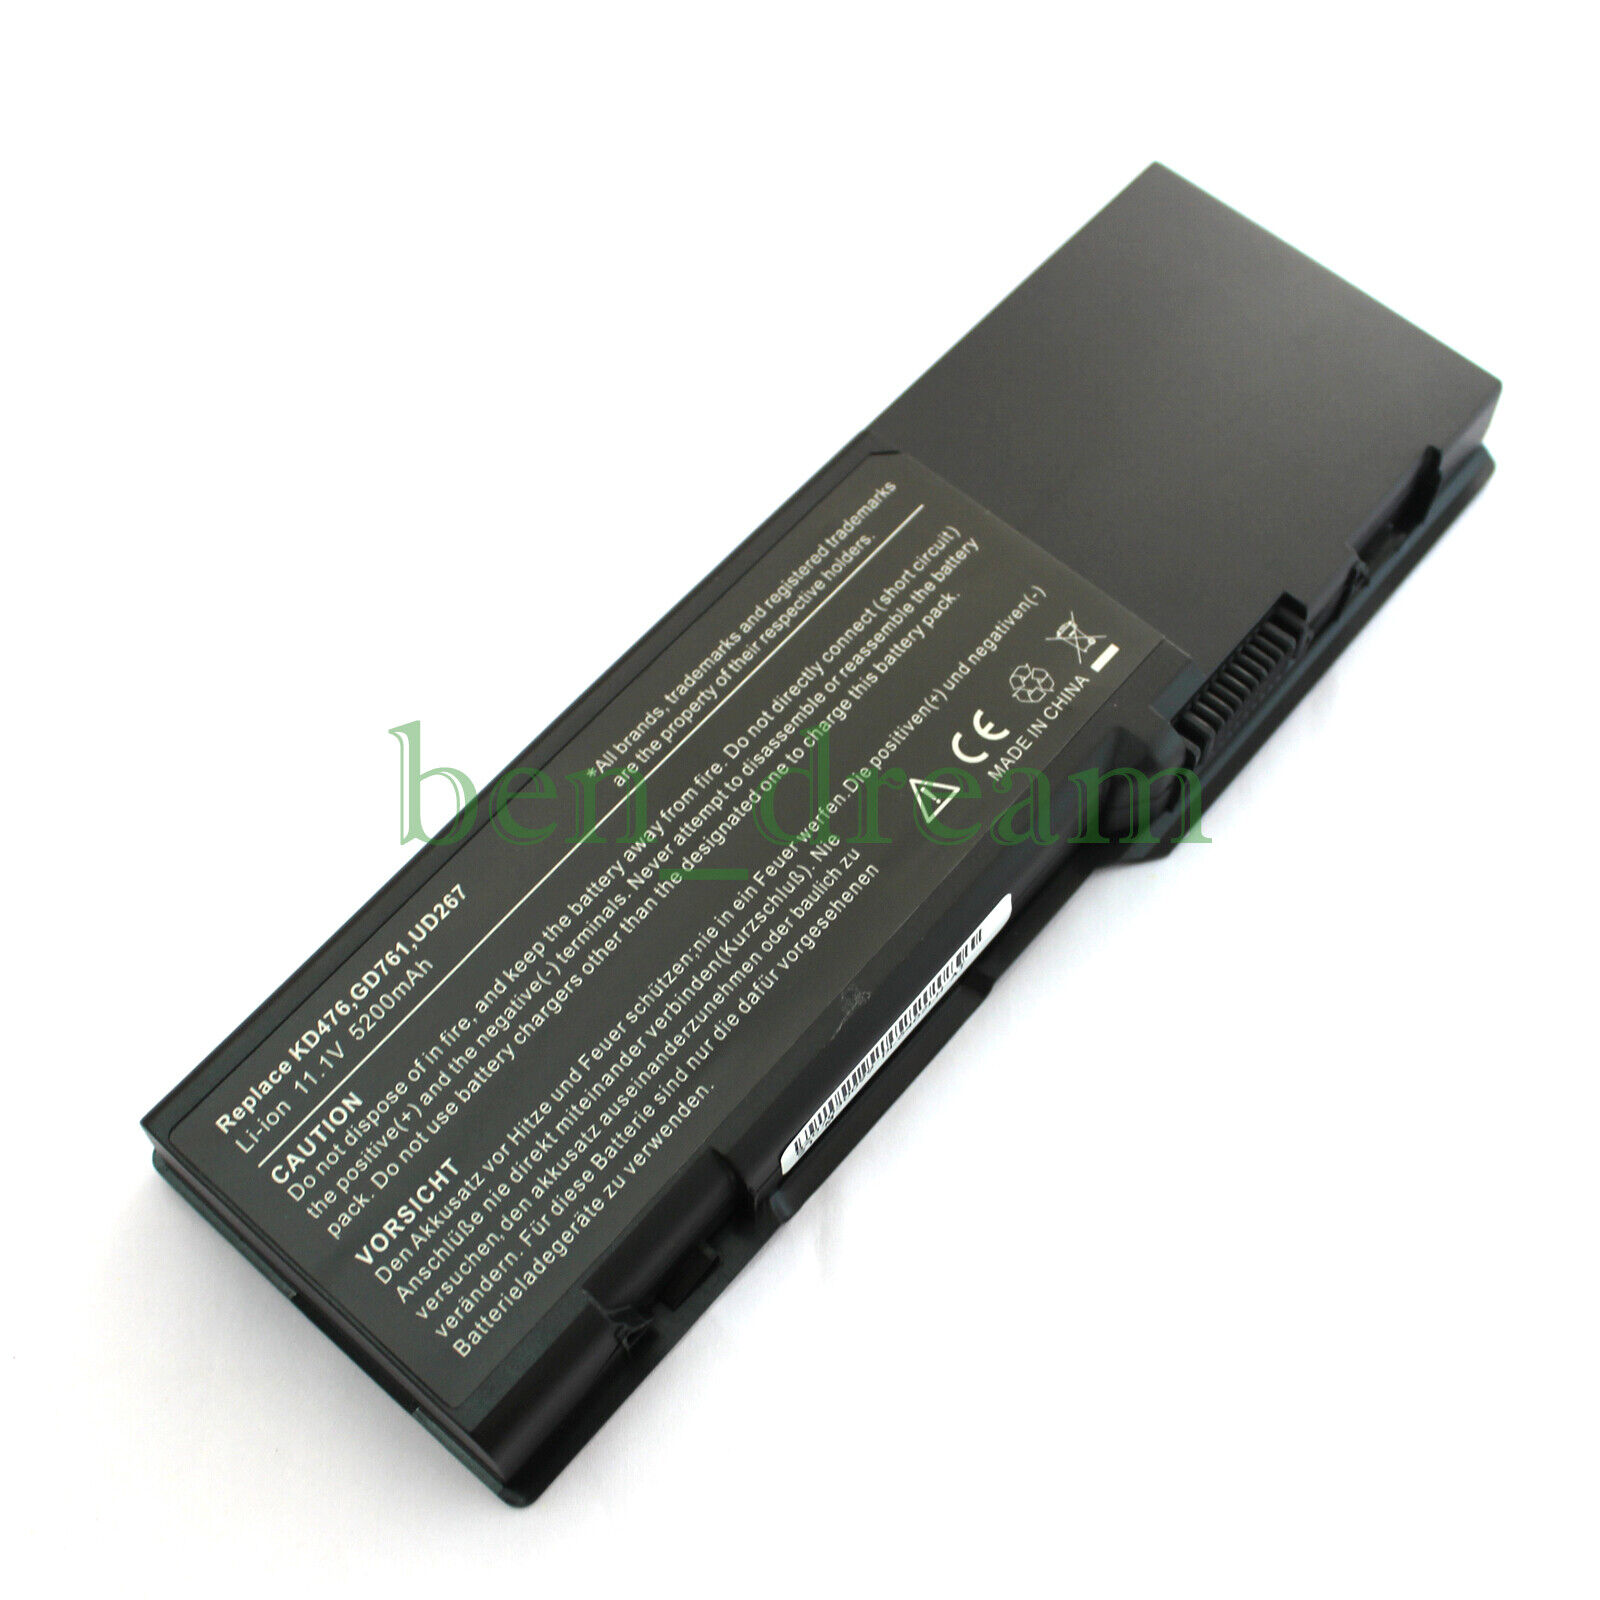 Battery for Dell Inspiron 1501 6400 E1505 Latitude 131L Vostro 1000 GD761 RD859